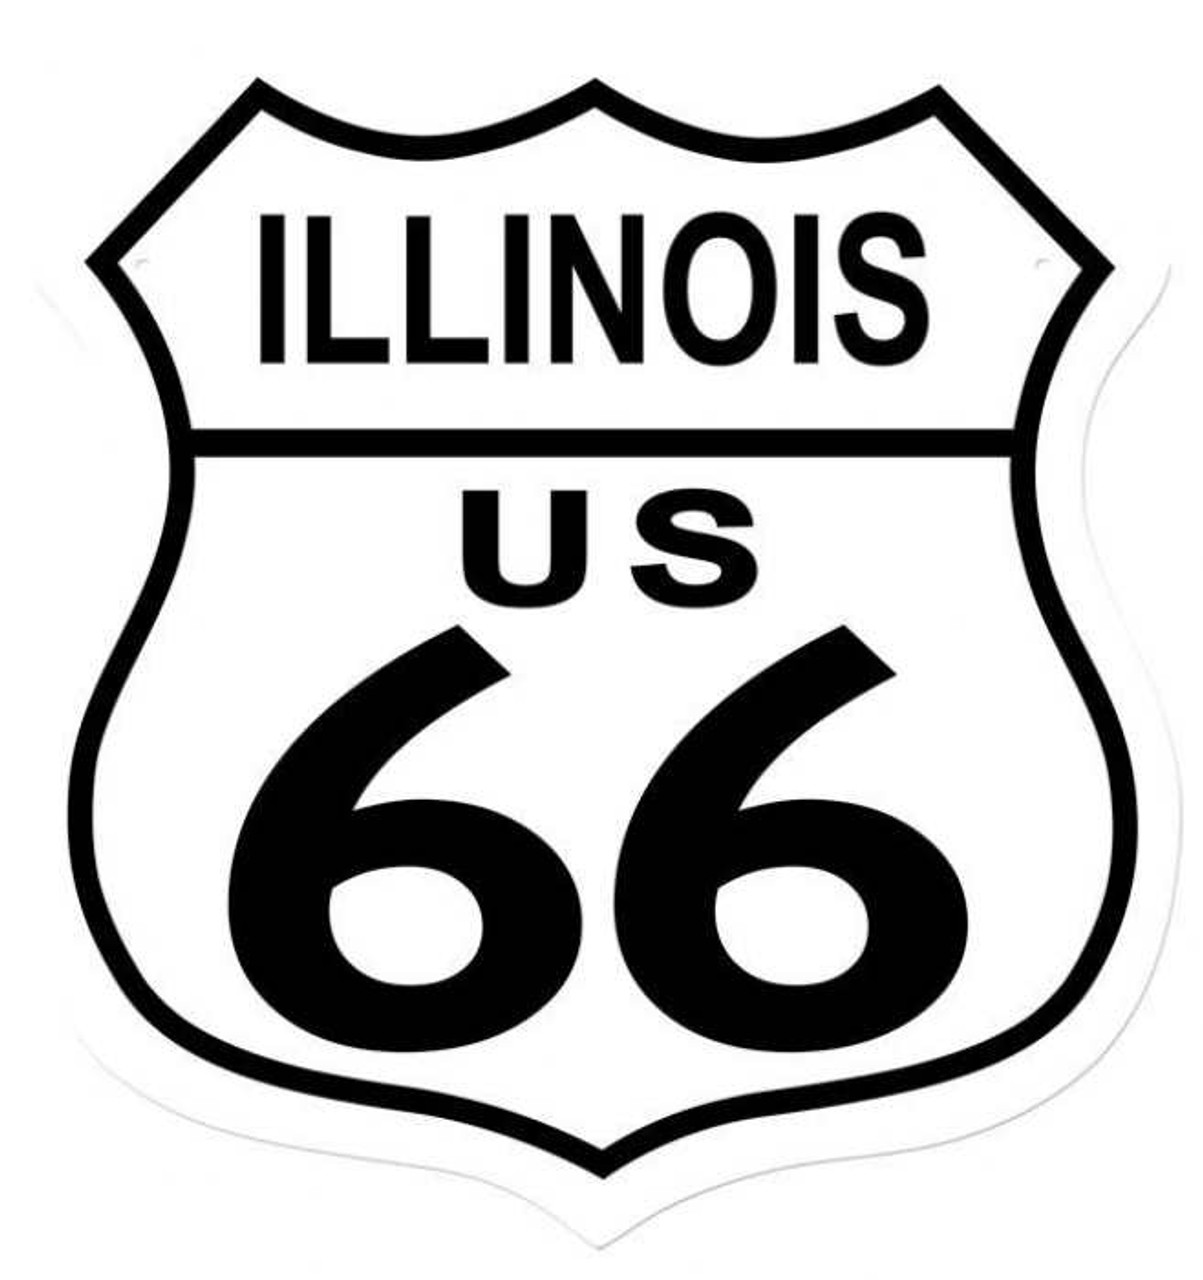 Retro Route 66 Illinois Shield Metal Sign 15 x 15 Inches